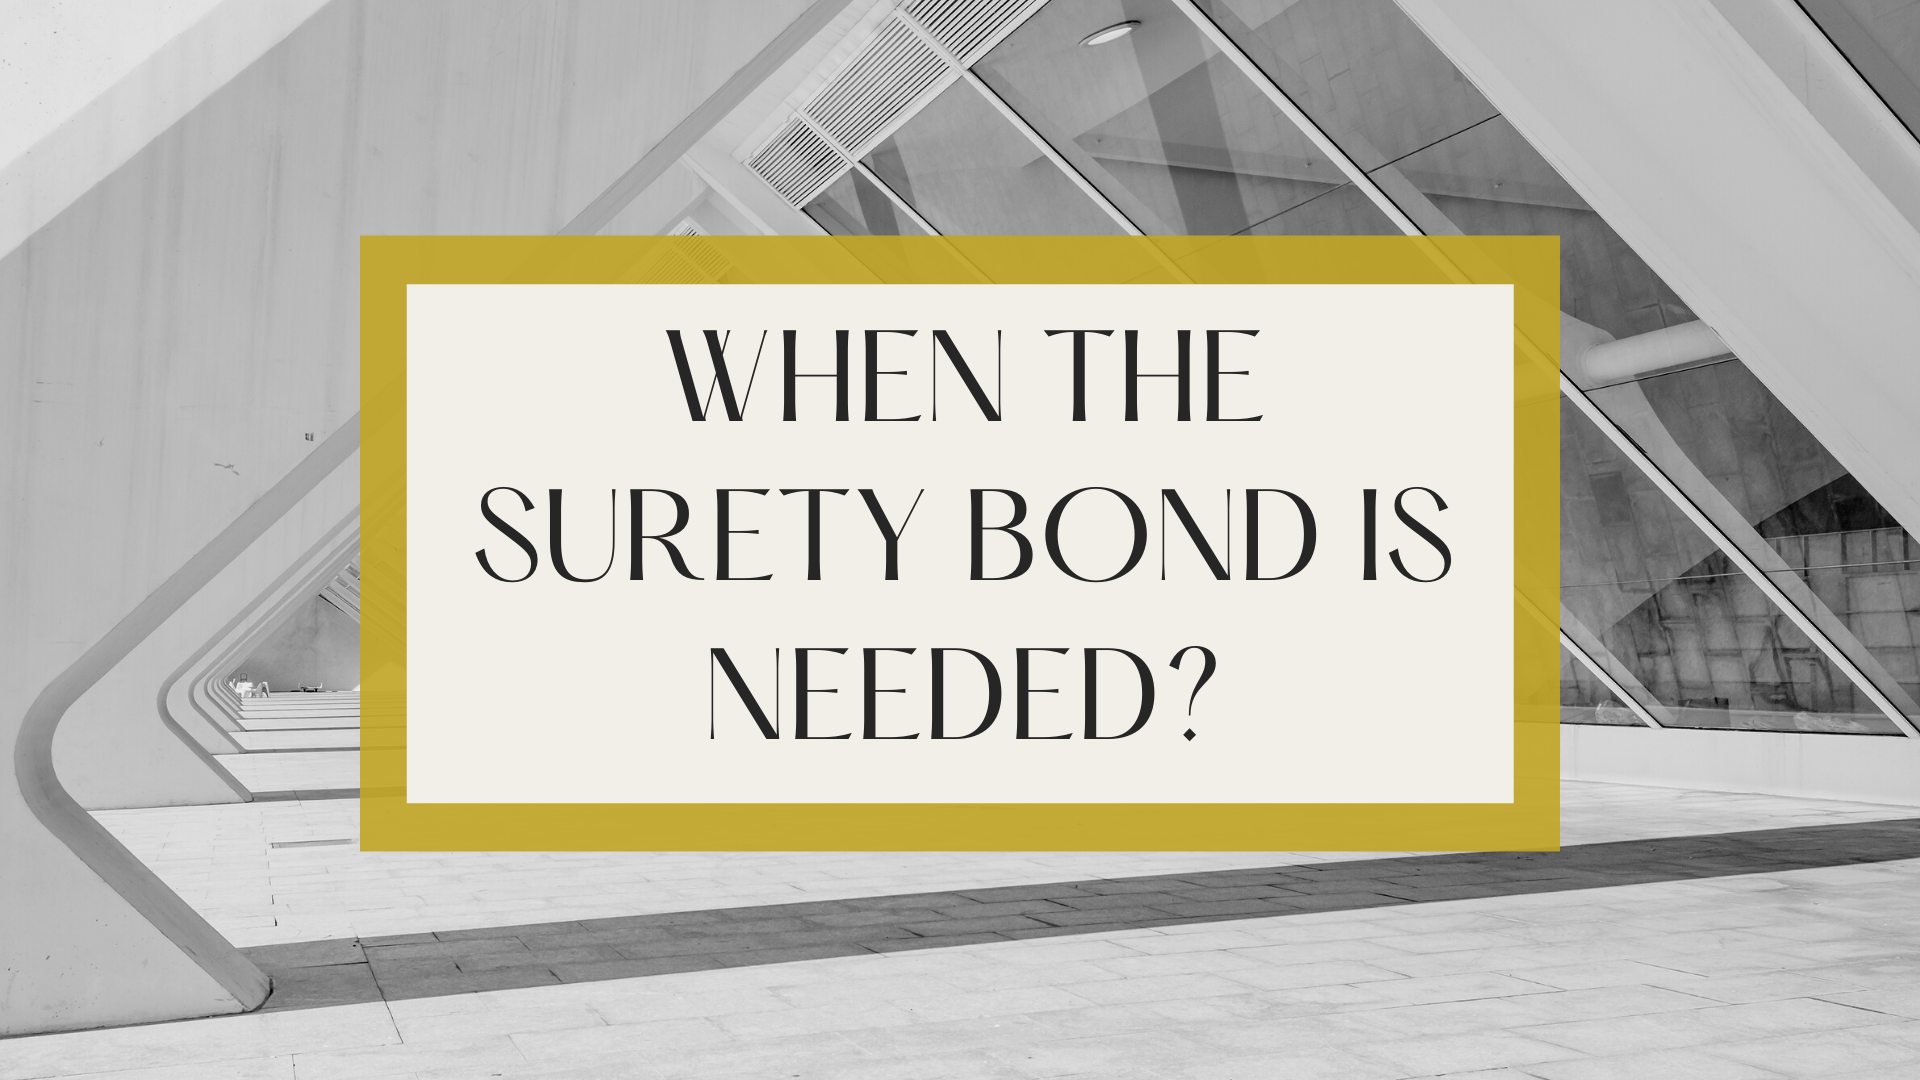 surety bond - When the surety bond is needed? - building